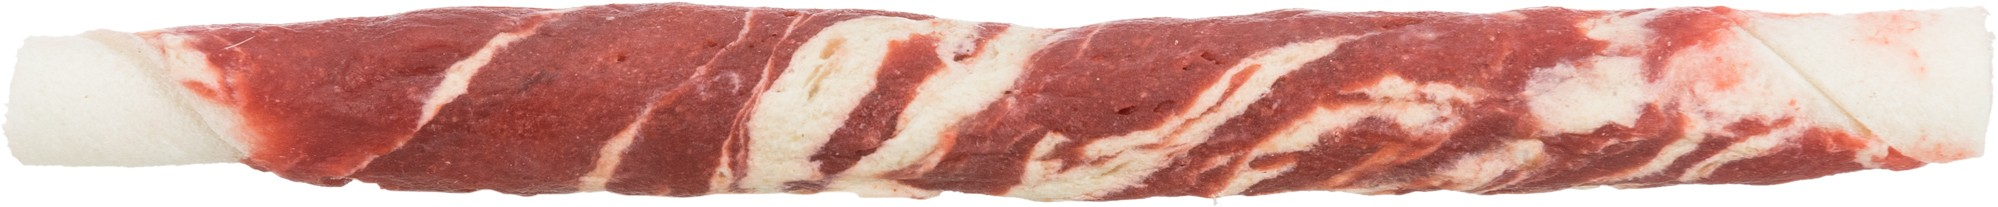 Marbled Beef Chewing Rolls Zahnspaß